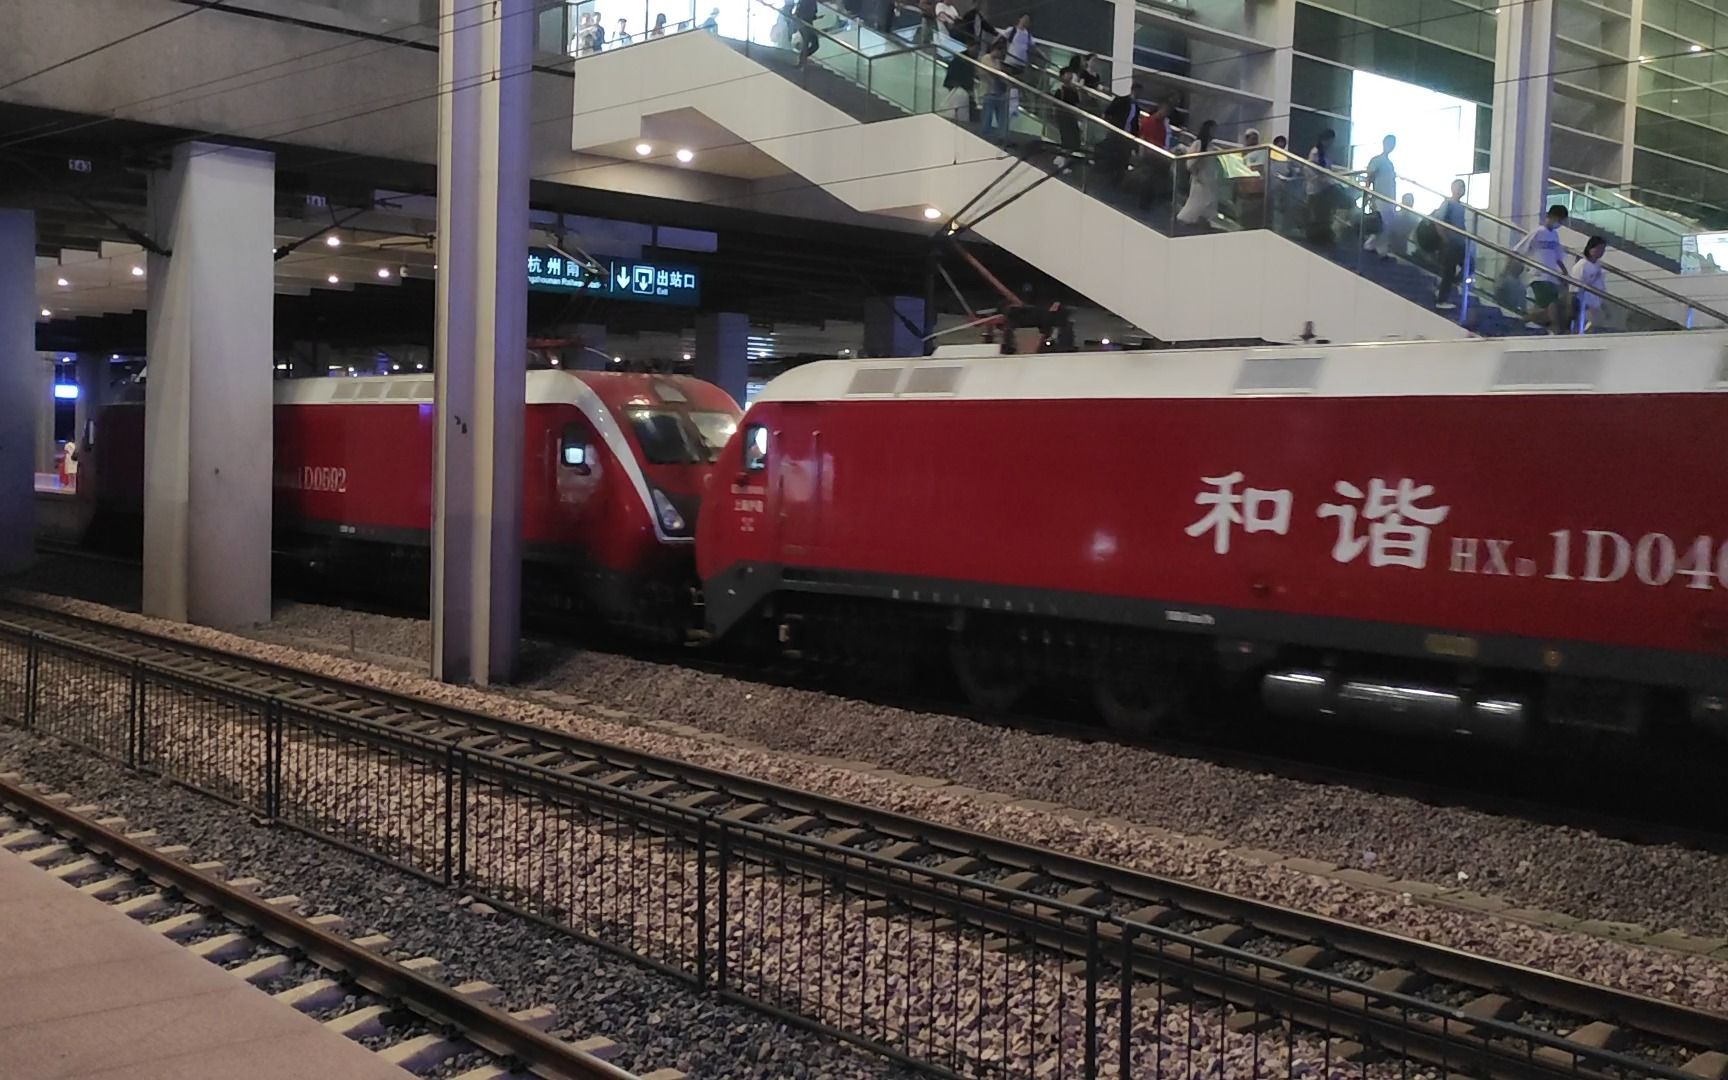 【双机hxd1d】k79次列车进杭州南站